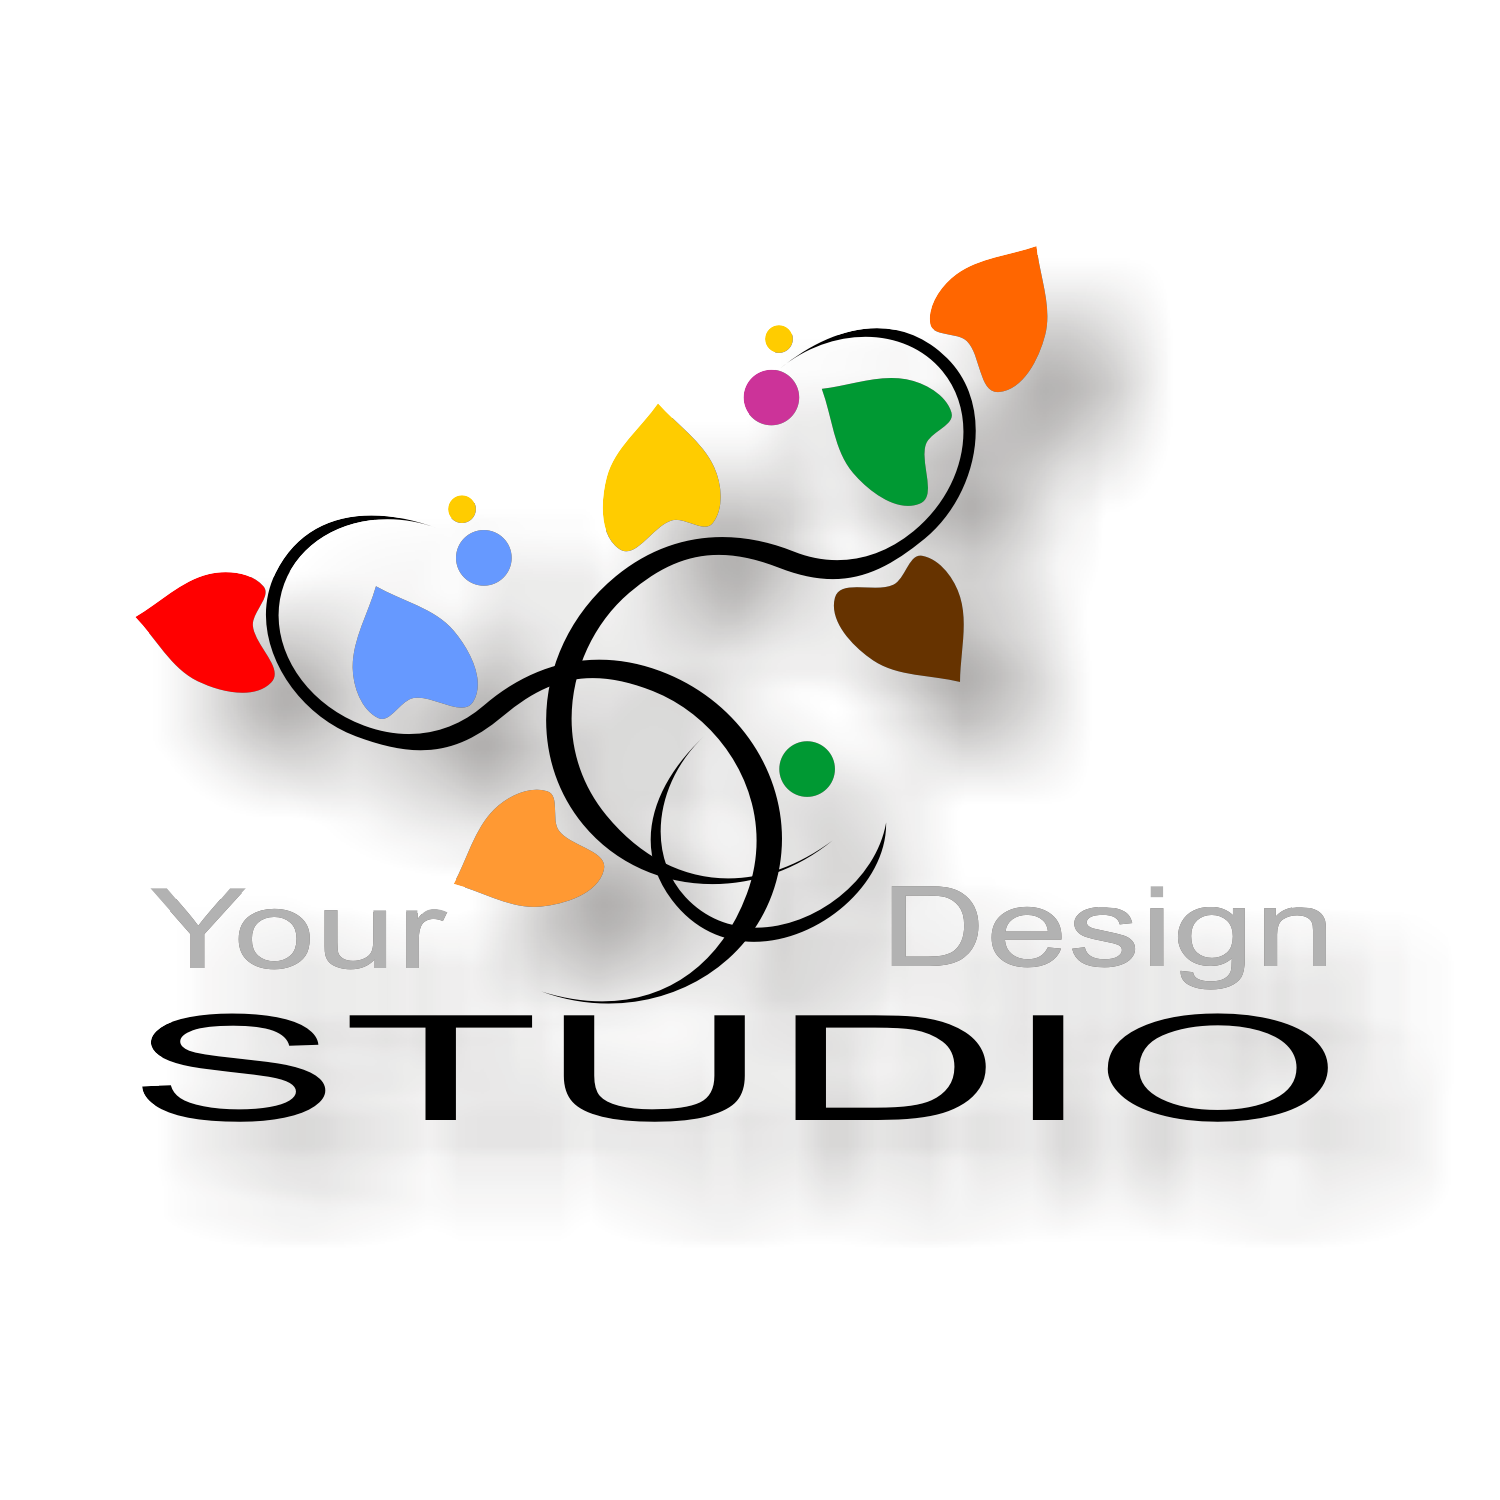 Graphic Design Studios Logos